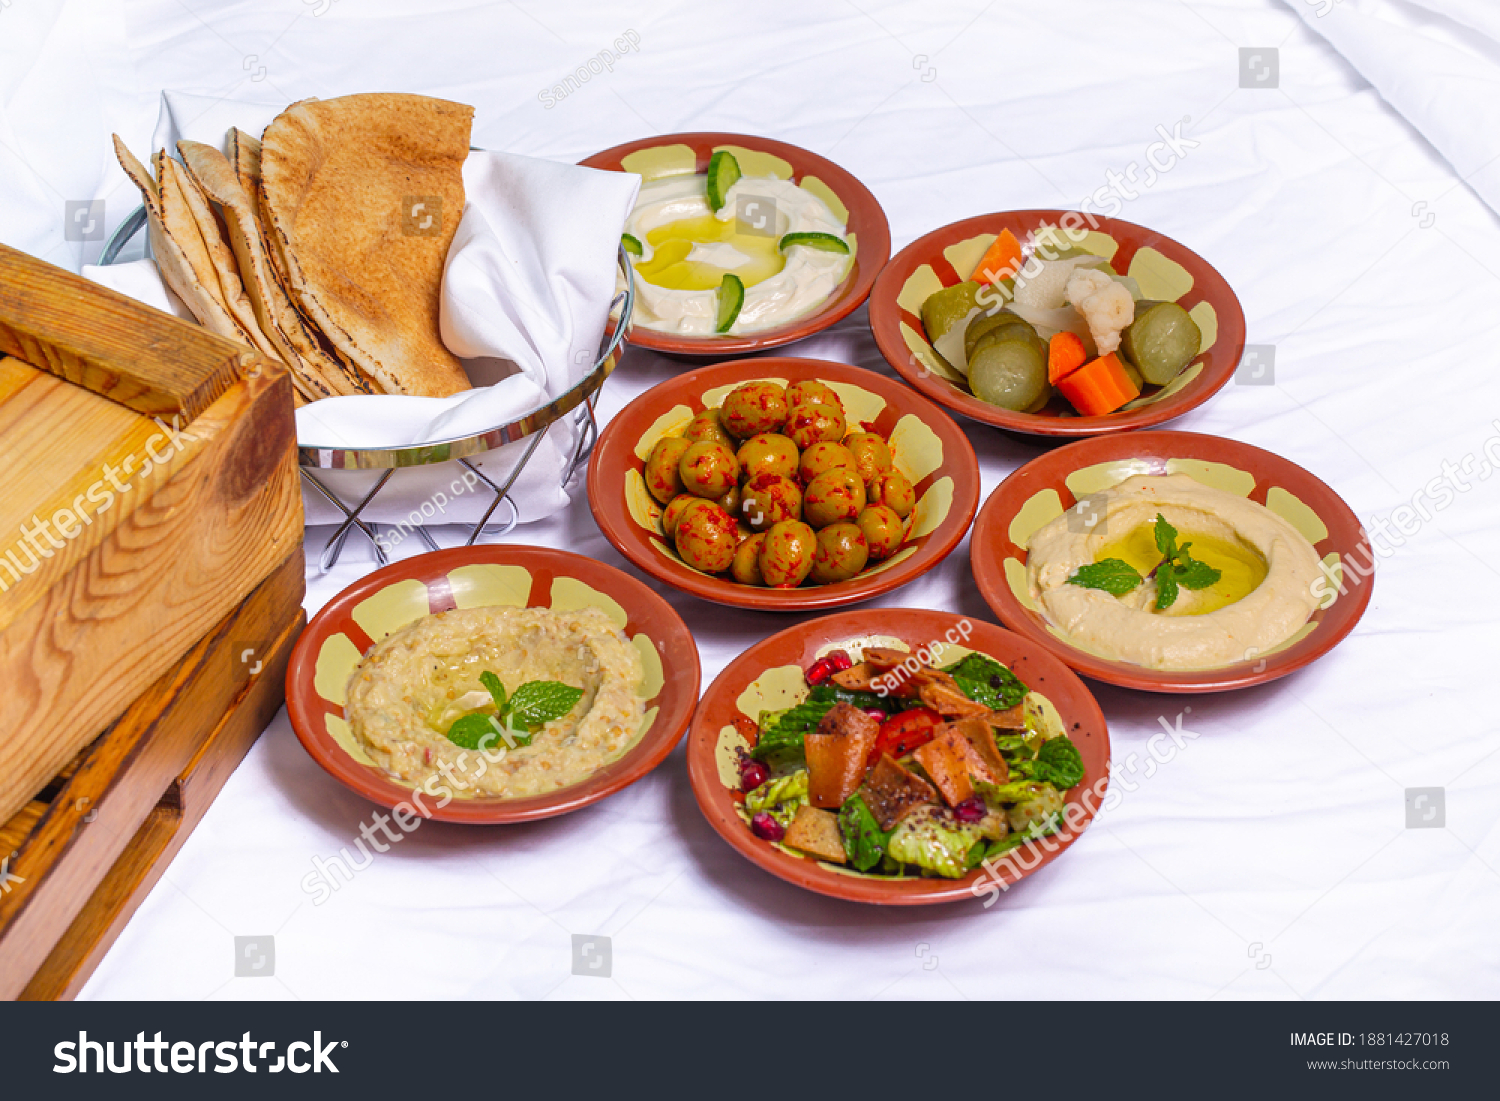 Arabisches Frühstück, foul medames, labneh, halloumi, Stockfoto ...